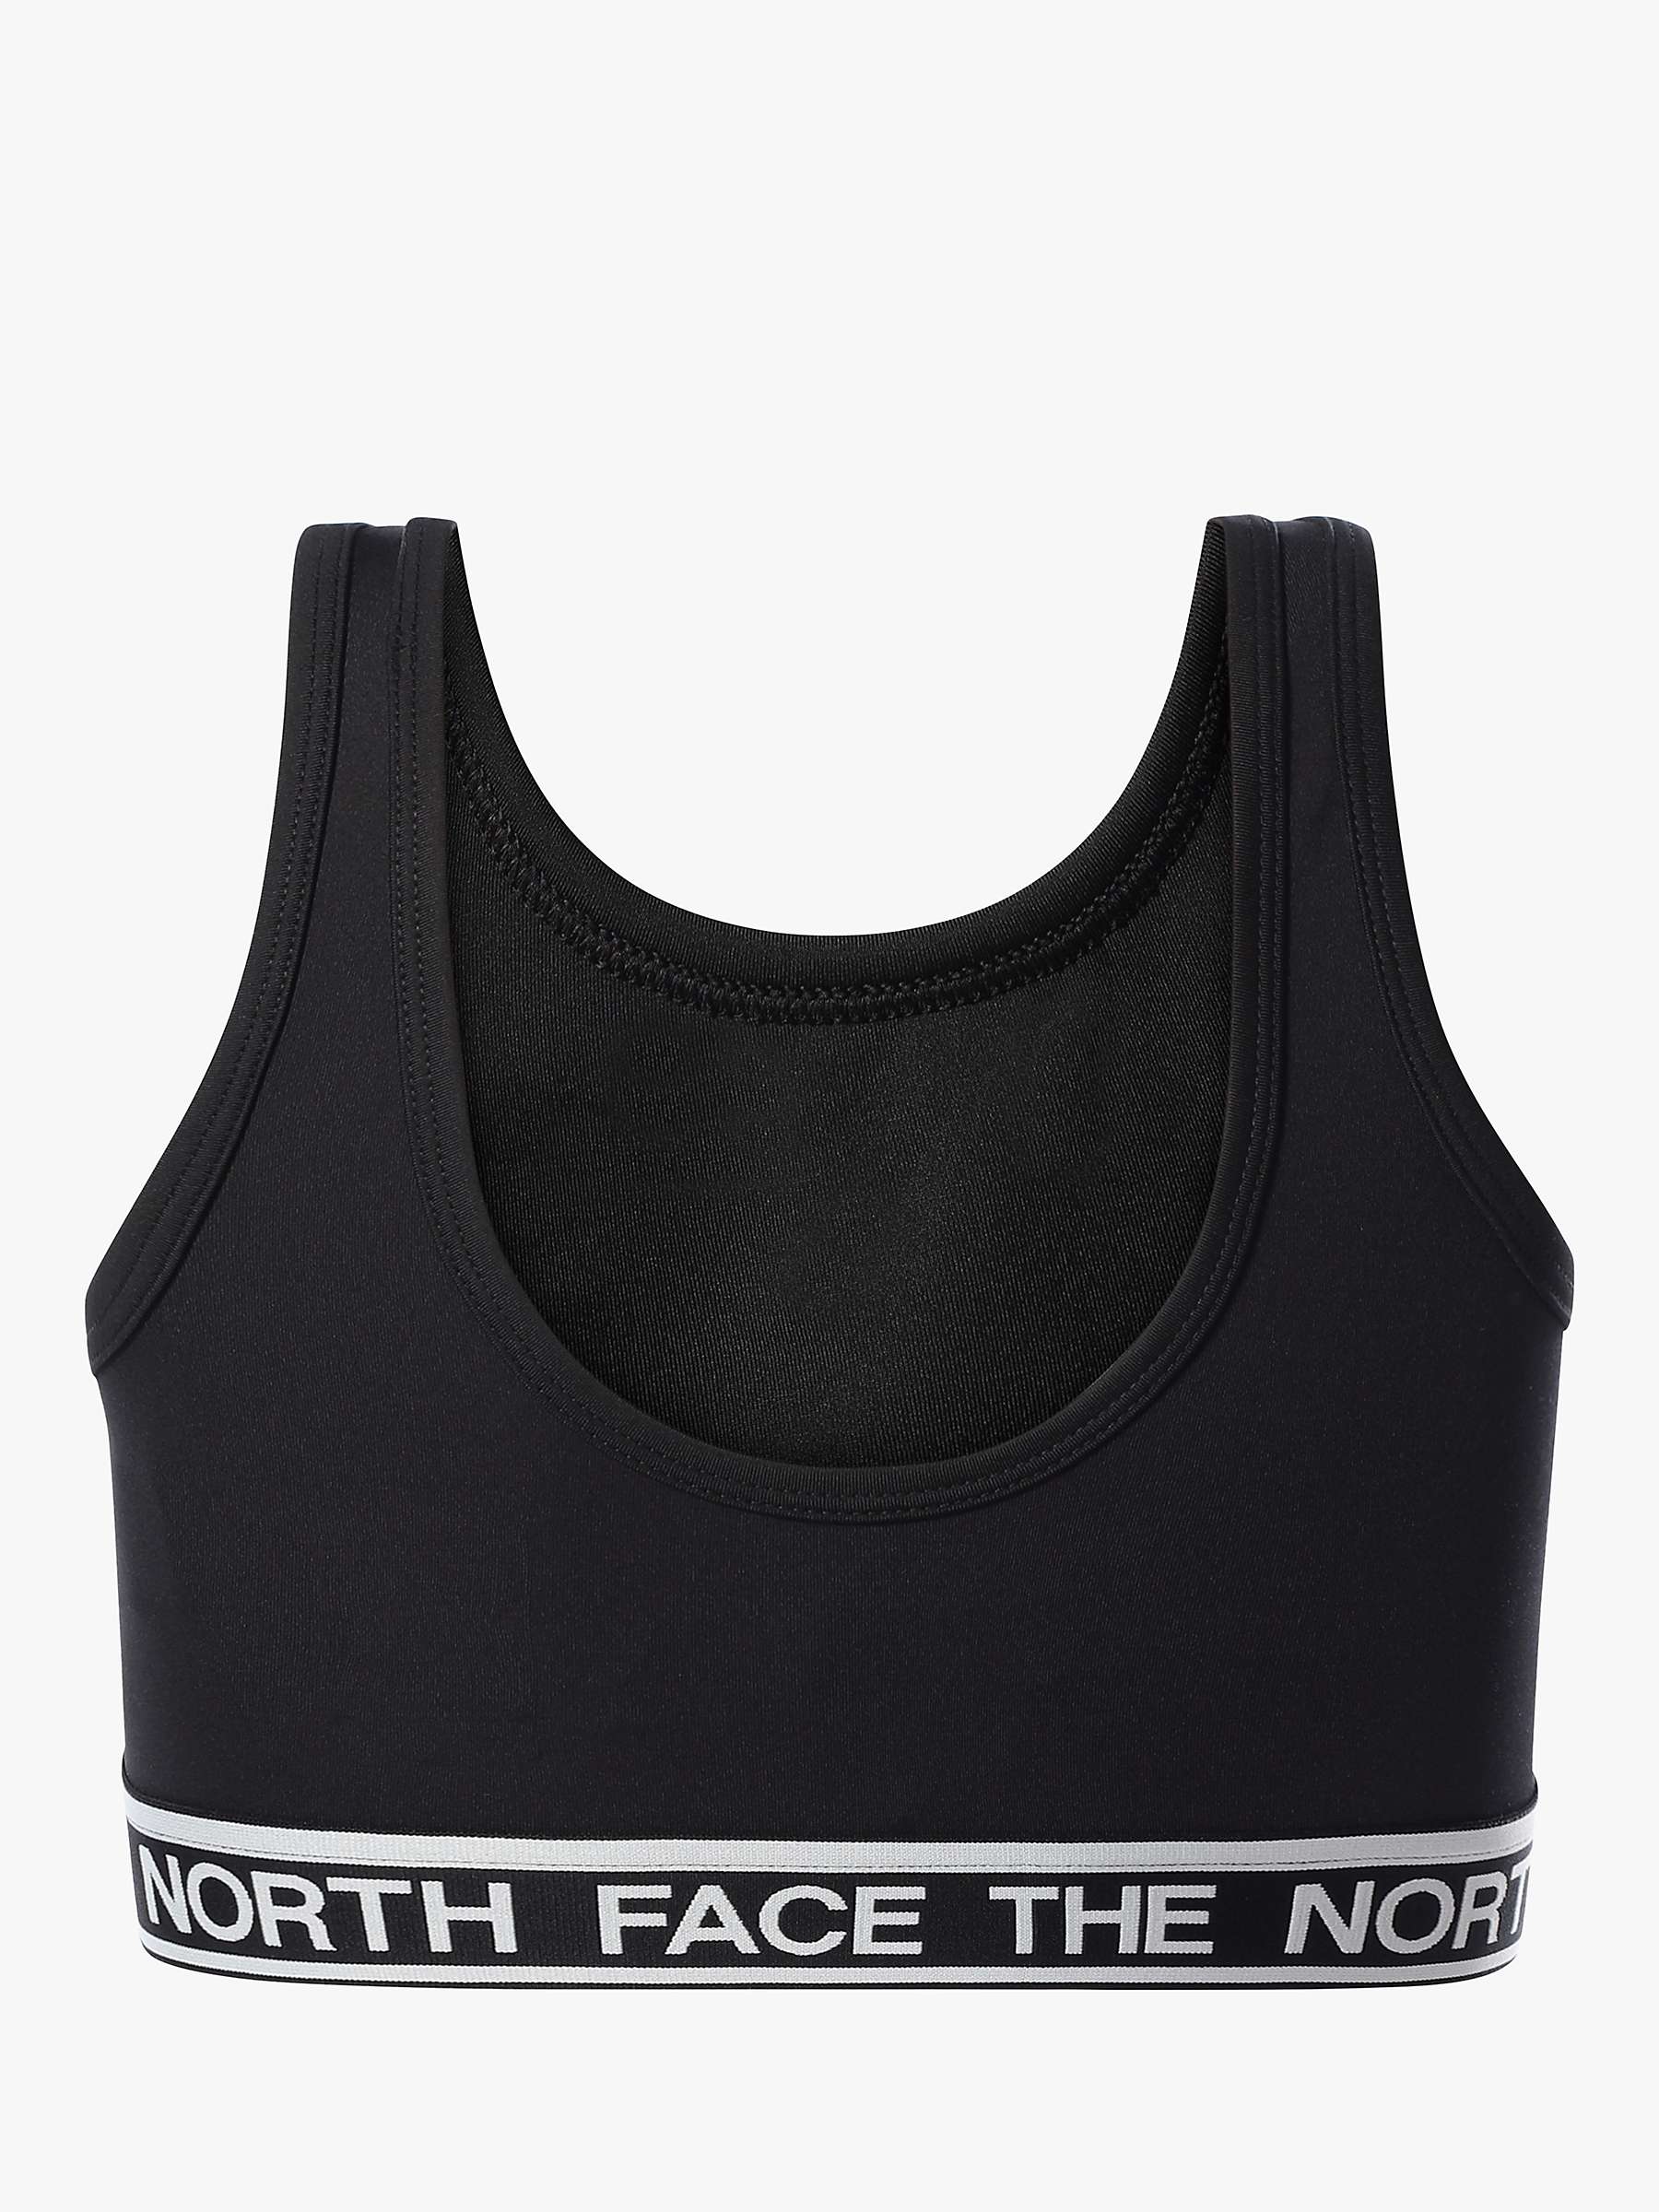 Buy The North Face Kids' Logo Band Bralette, Black Online at johnlewis.com